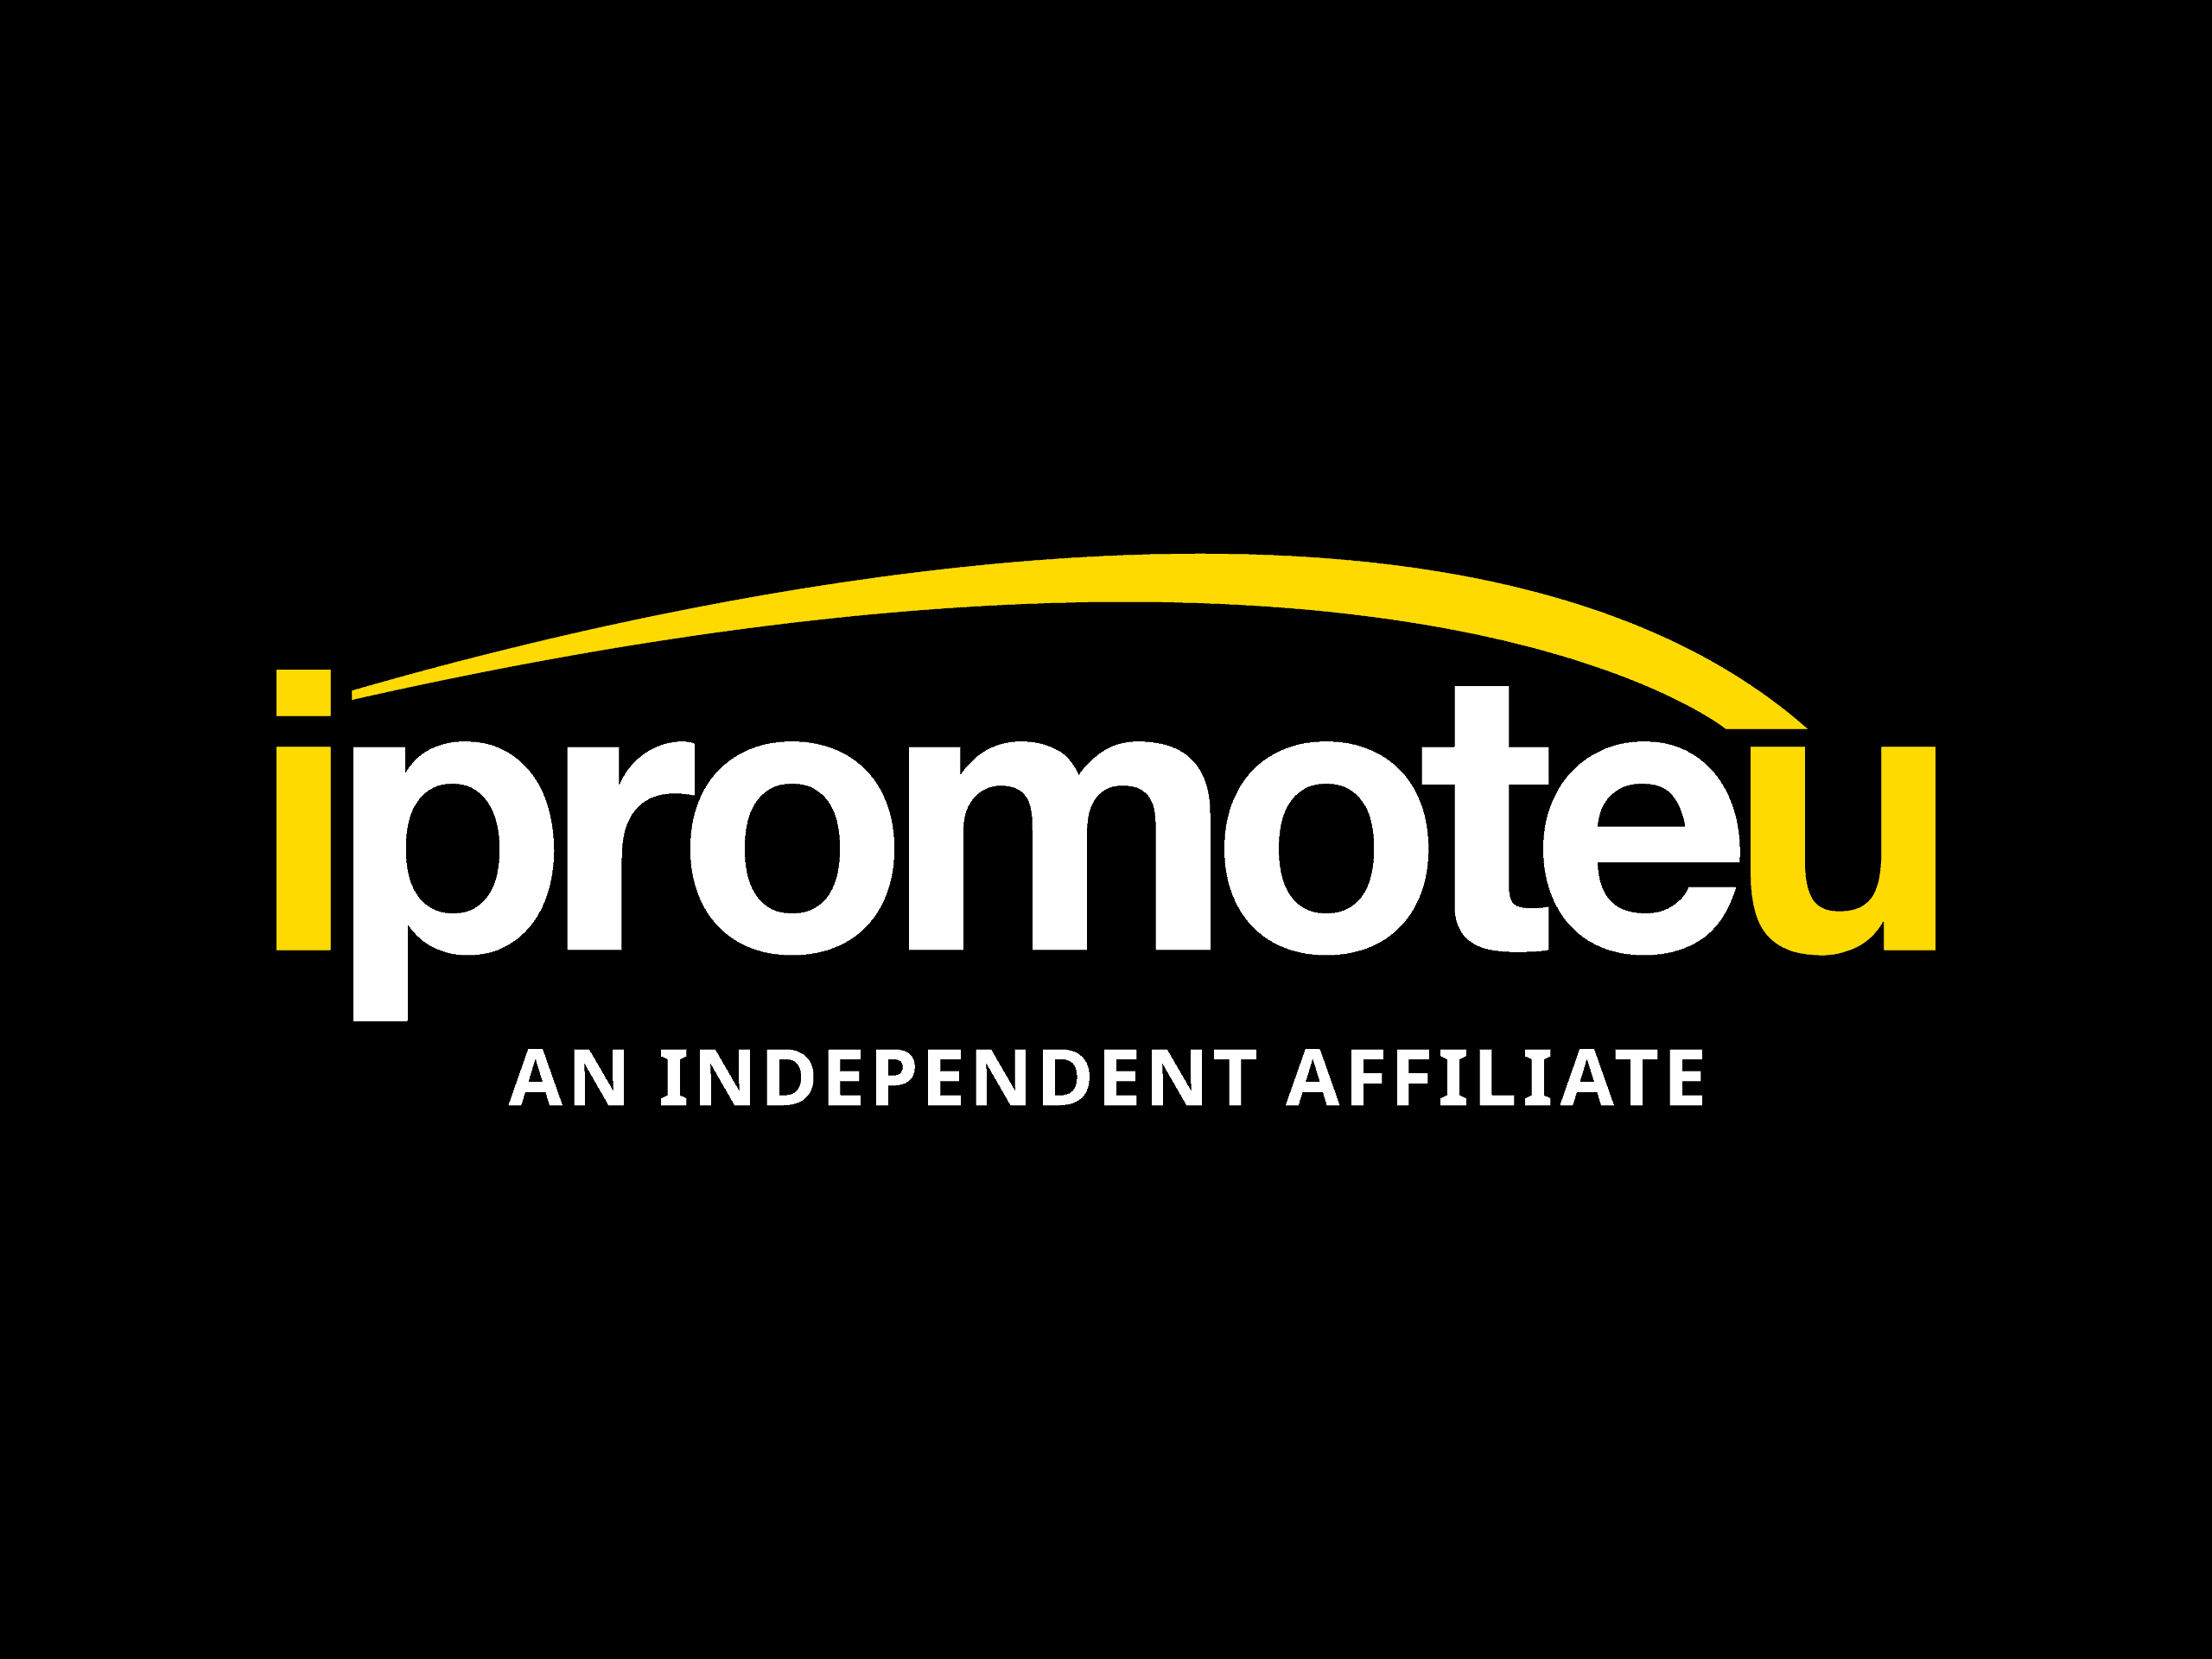 Ipromoteu an independent affiliate.